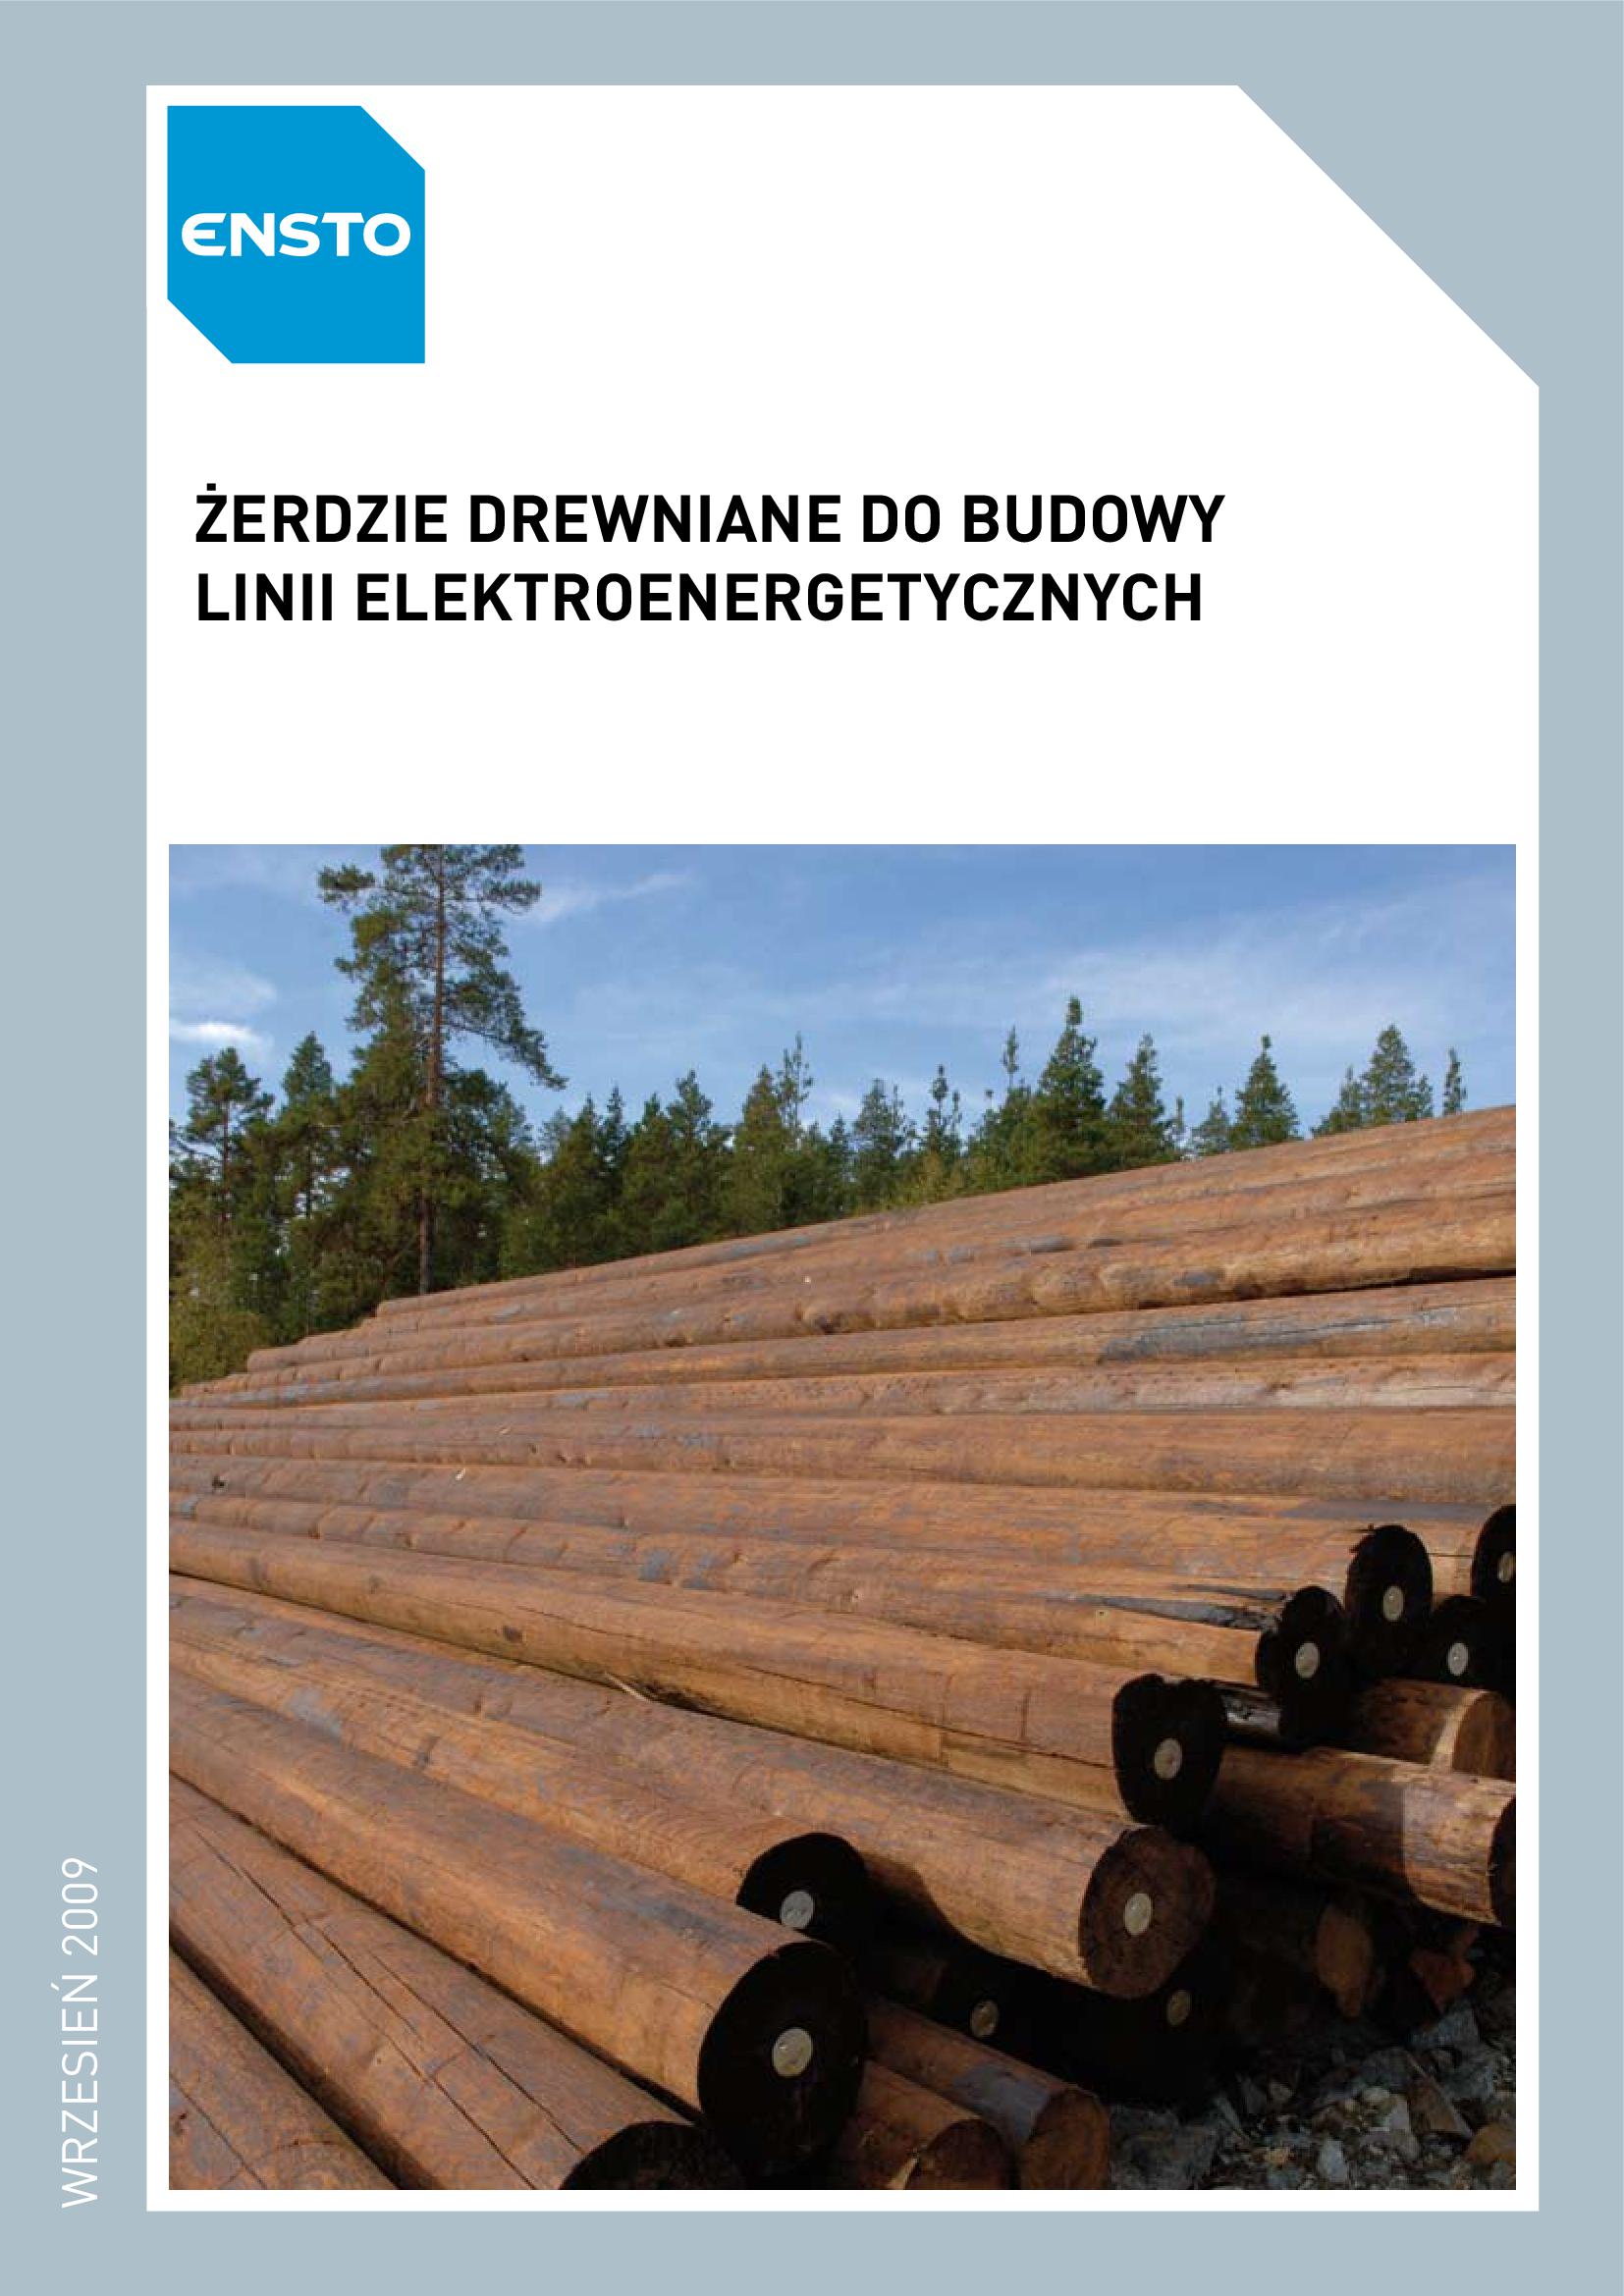 ENST_Catalog_Zerdzie drewniane